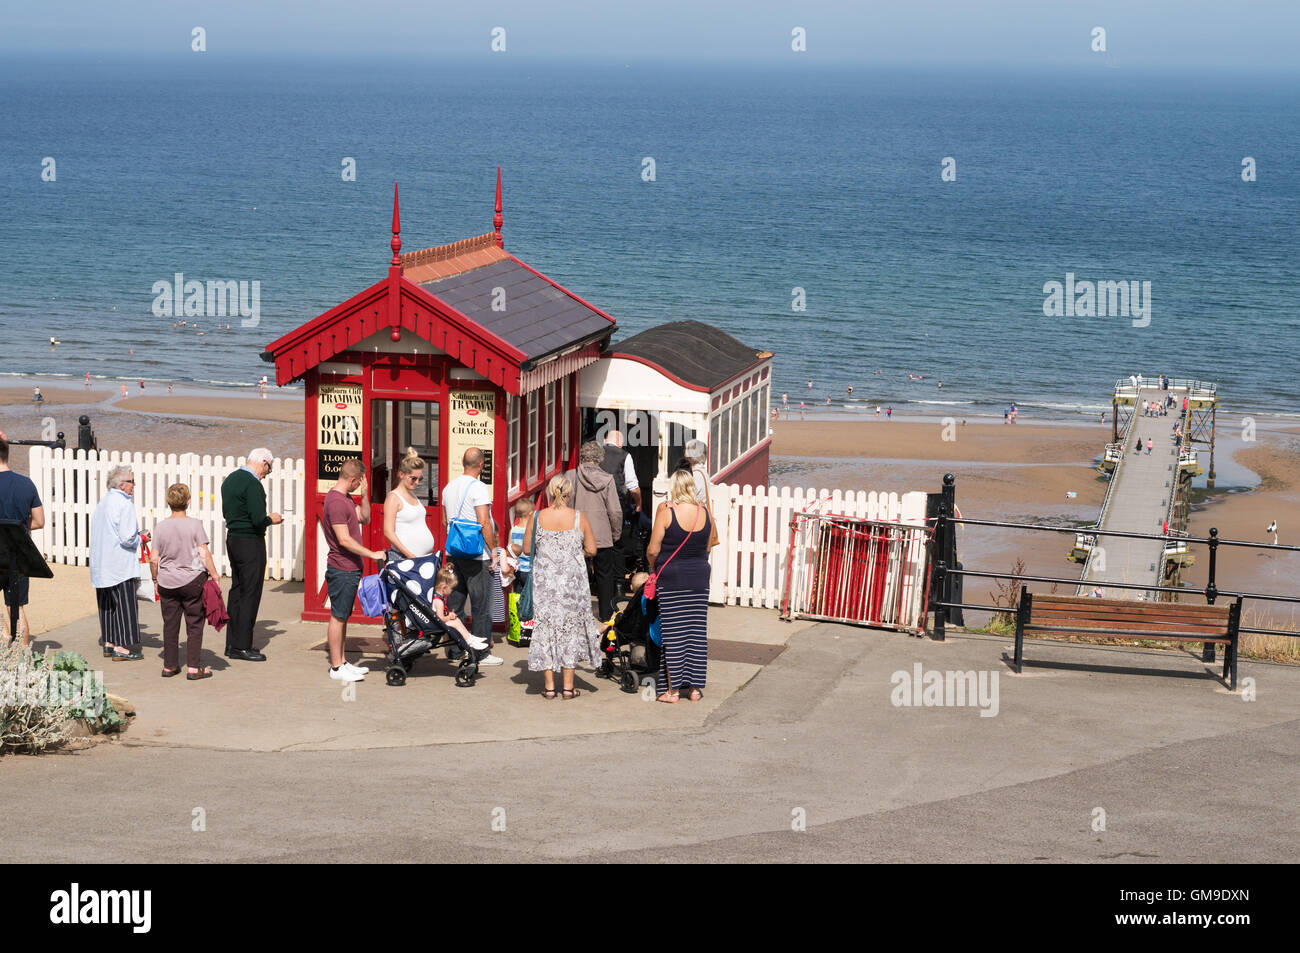 Les gens faisant la queue pour utiliser la mer par Moscou de la Falaise, North Yorkshire, England, UK Banque D'Images